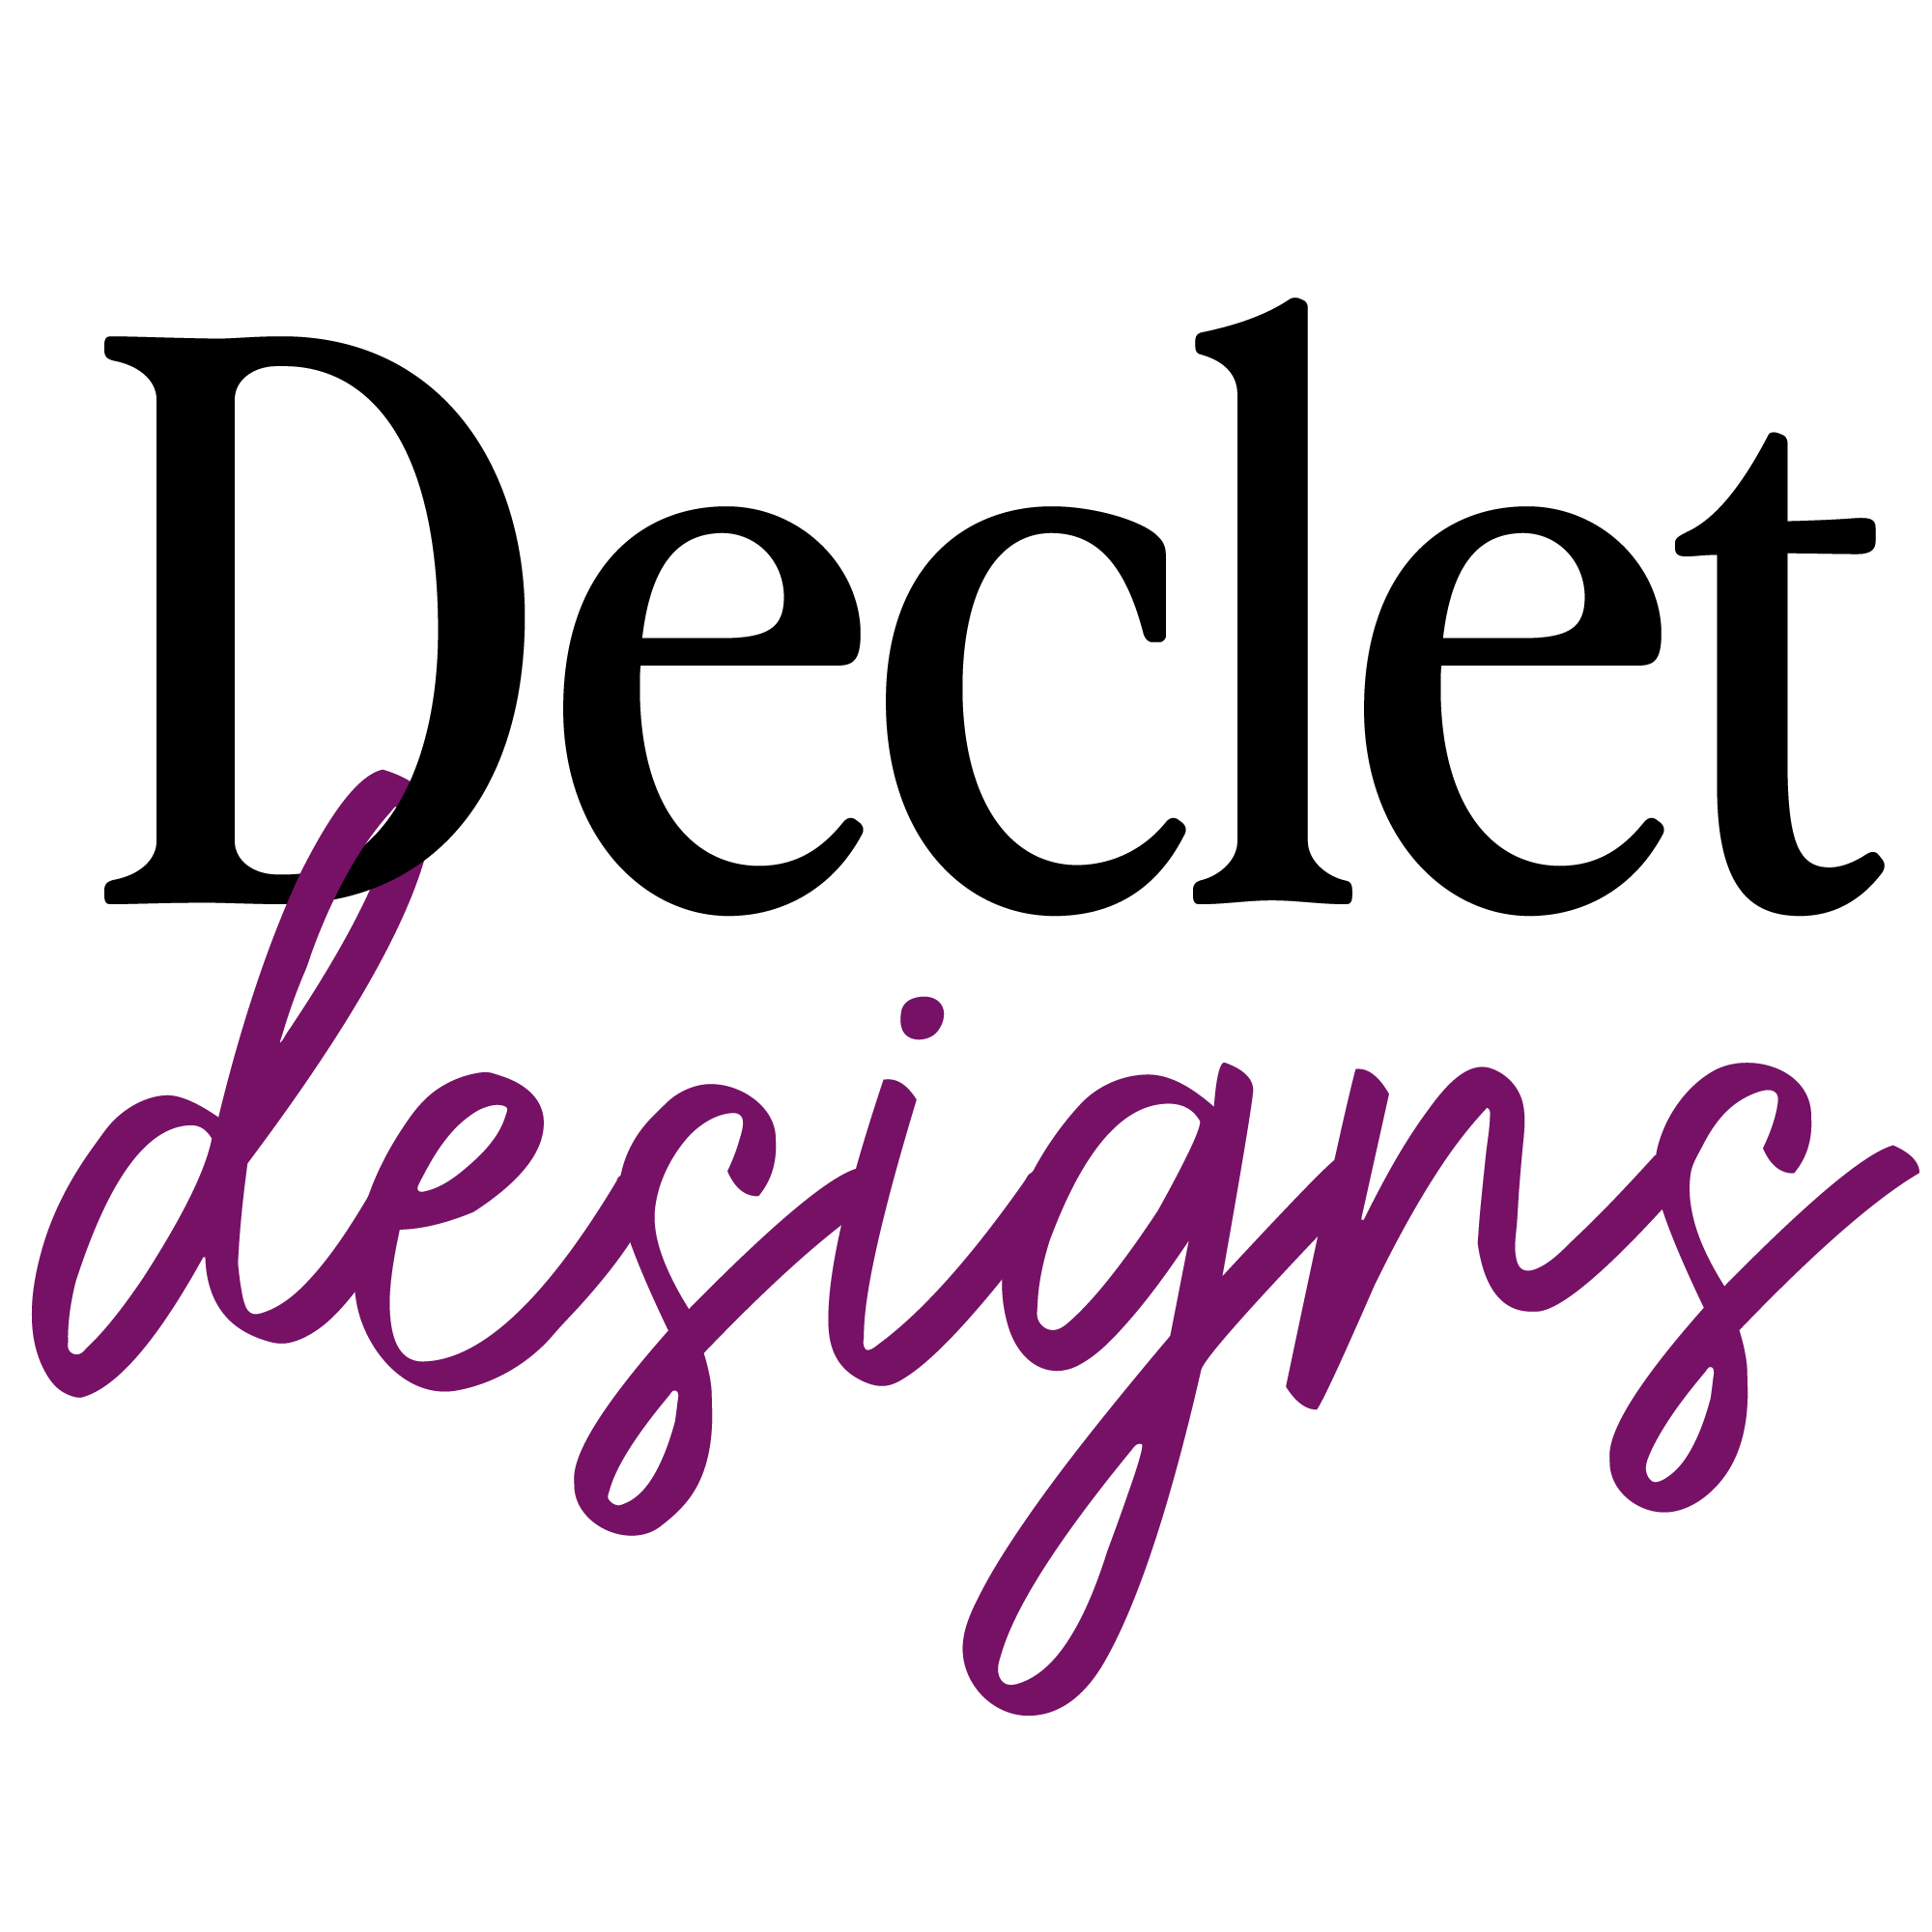 Declet Designs